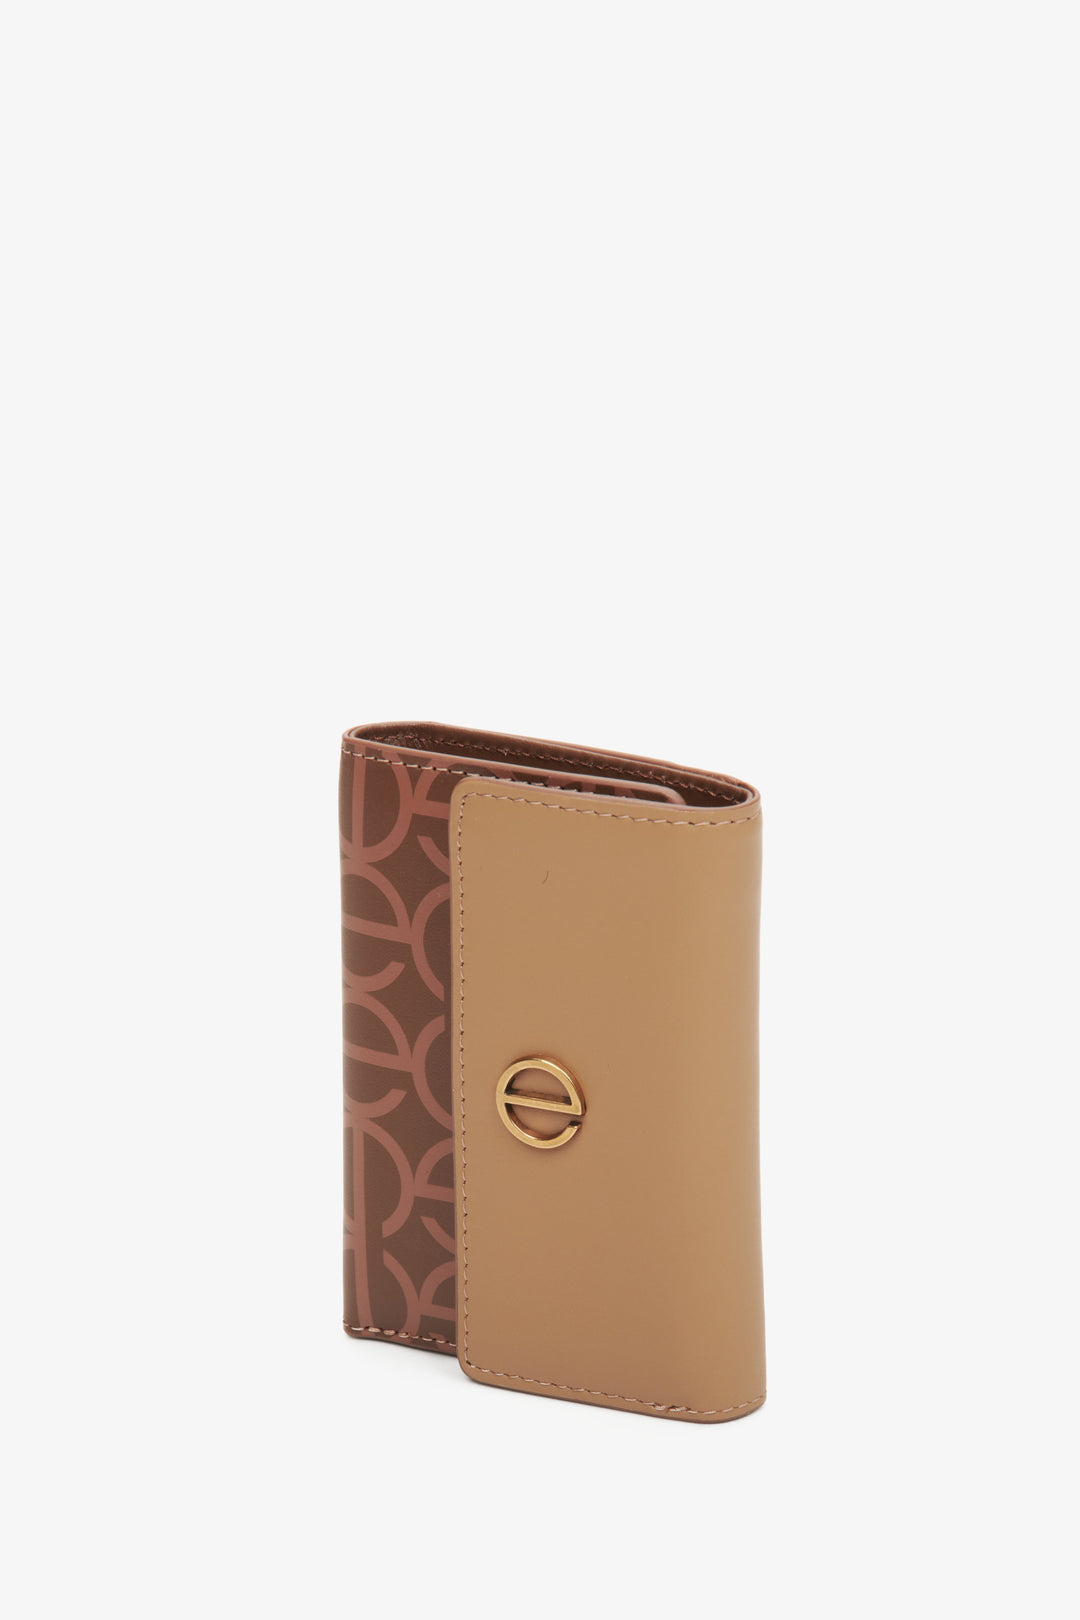 Brązowy, skórzany portfel damski średniej wielkości marki Estro.